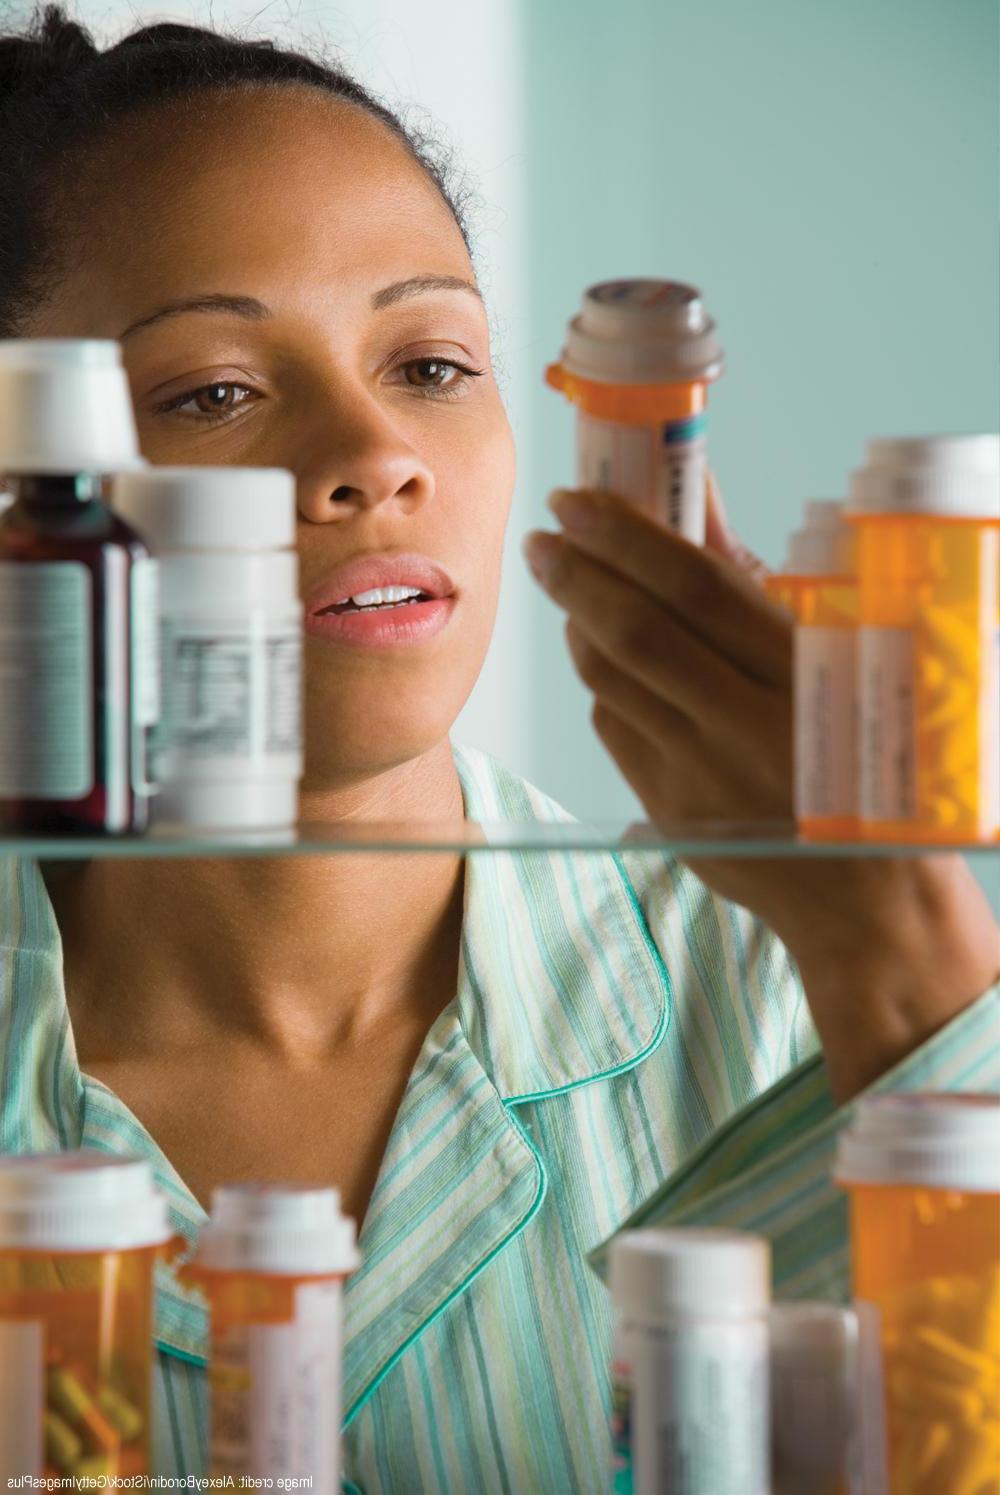 一名妇女在药柜里检查药品的照片